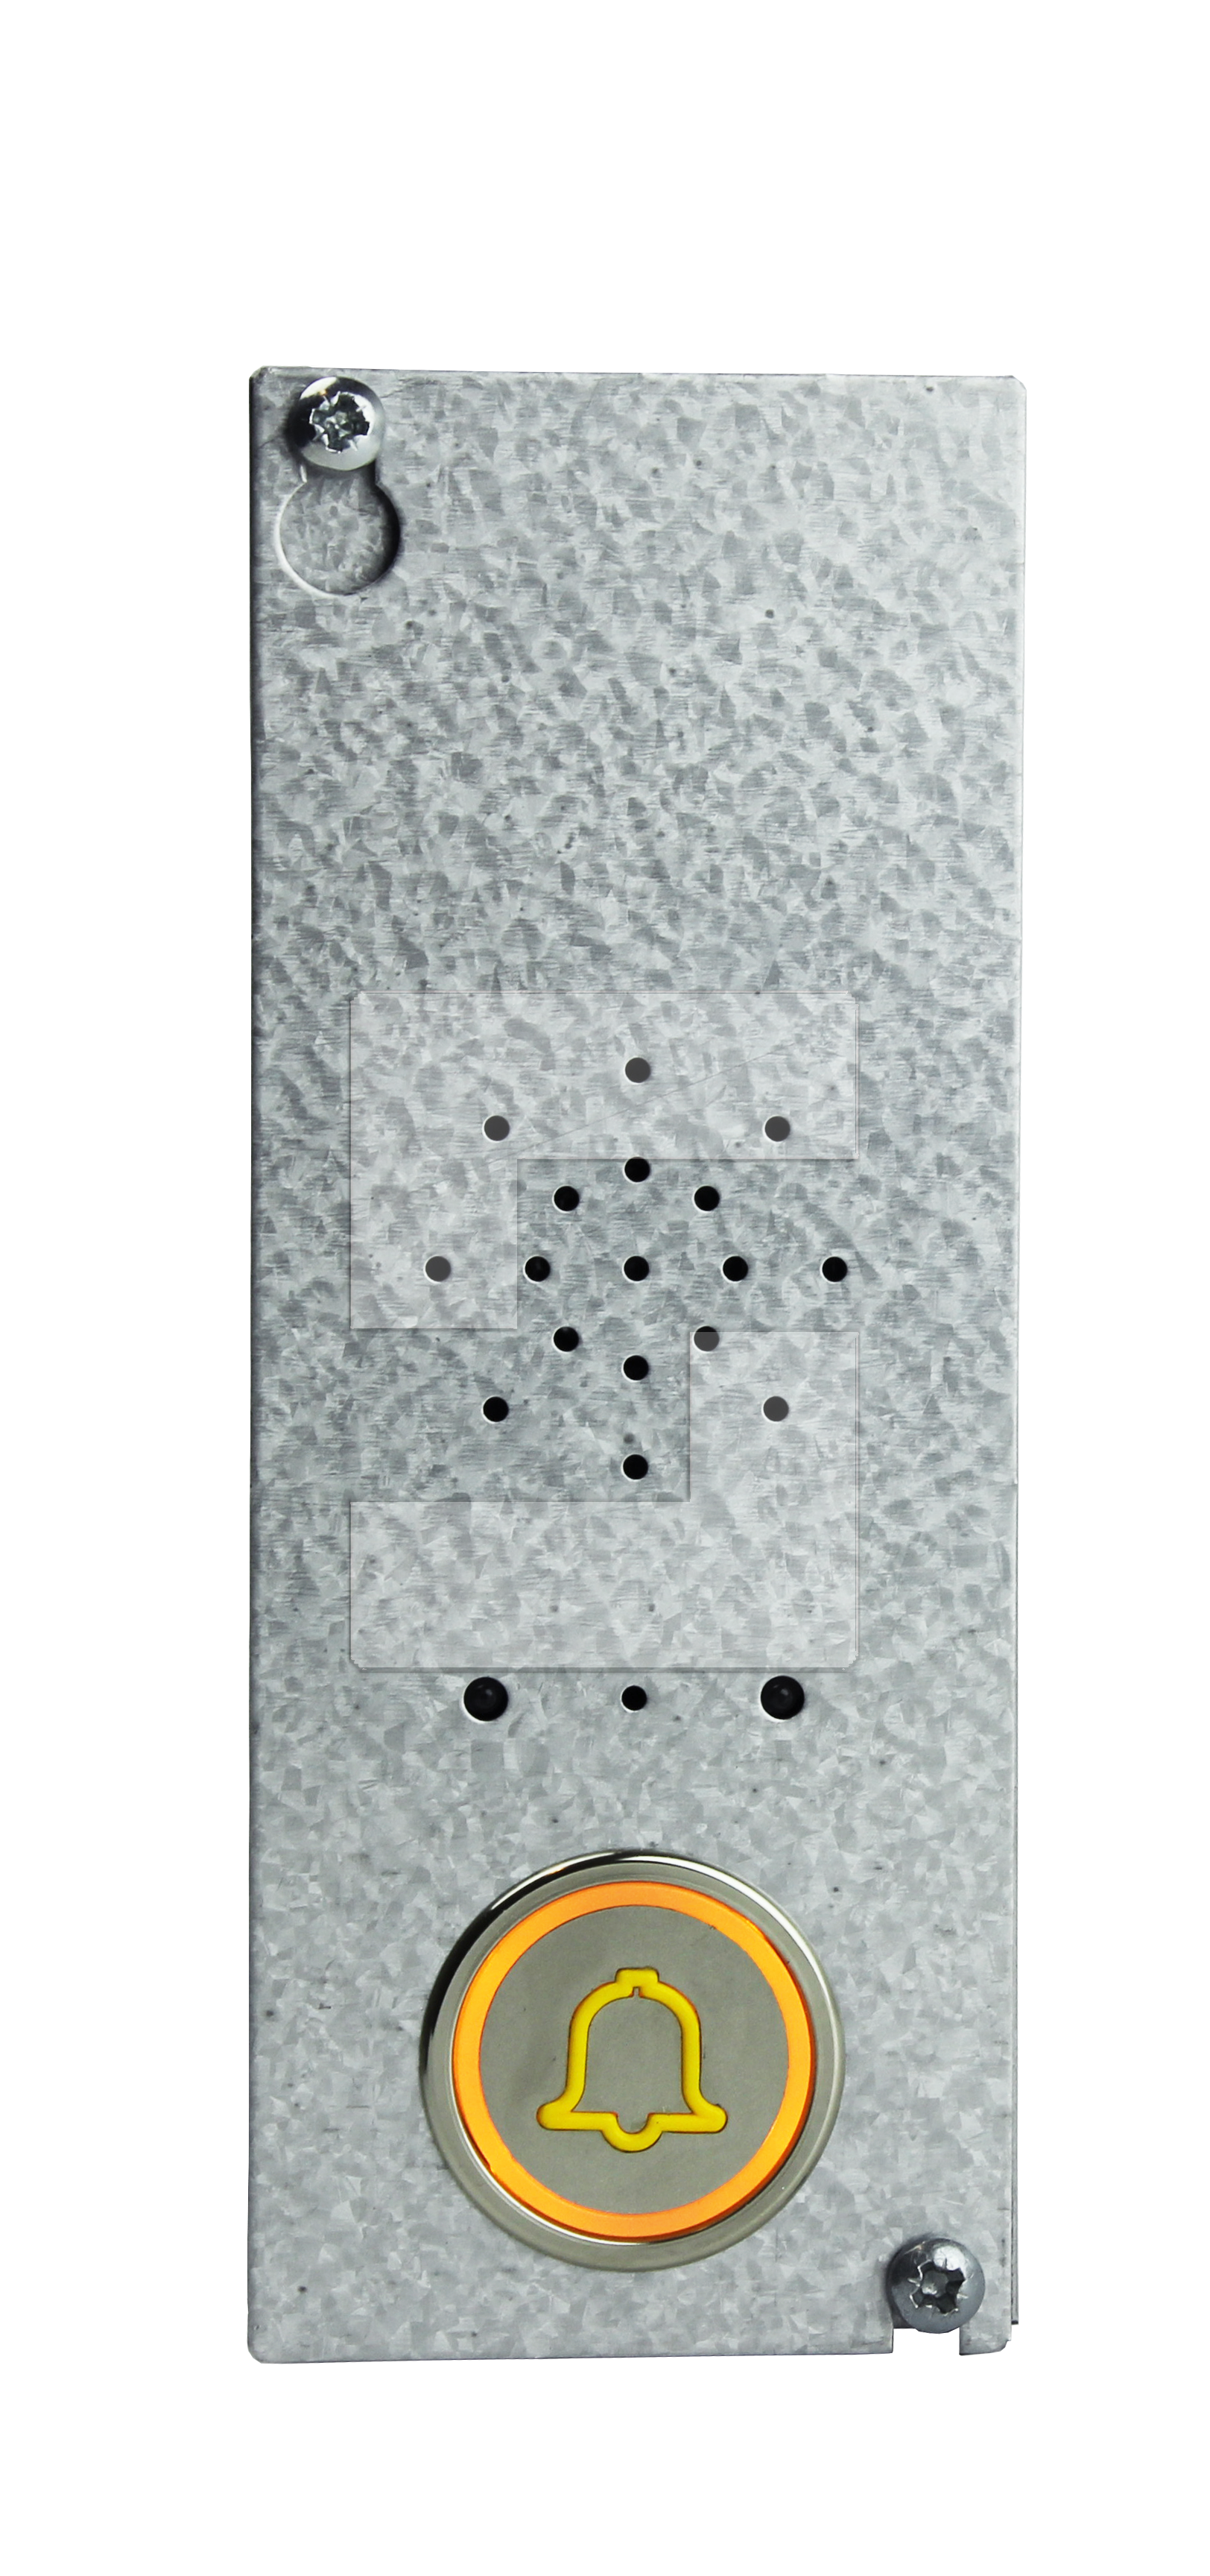 SL6- taleenhed til taget af elevatorstolen/skakten, med LED-belyst knap